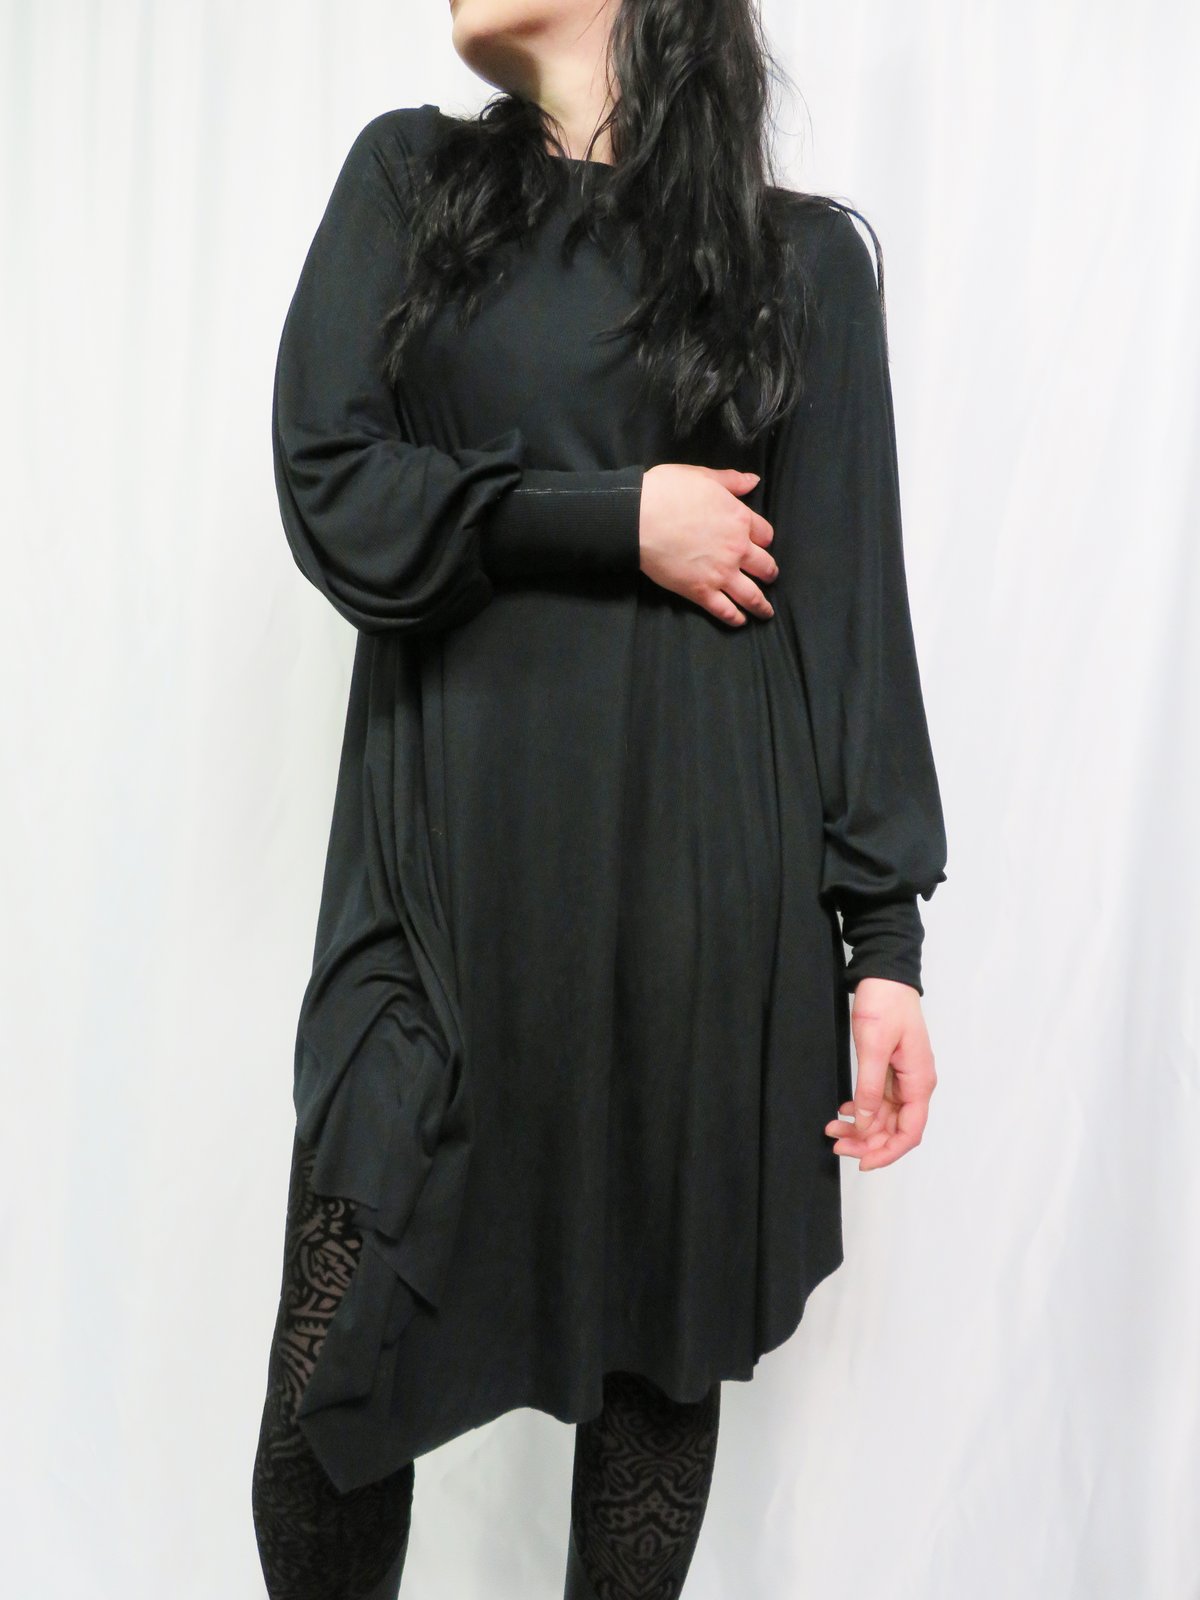 Let's Talk TUNICS! | Sheaffer Told Me To | Black tunic outfit, Black tunic  dress, Tunic outfit